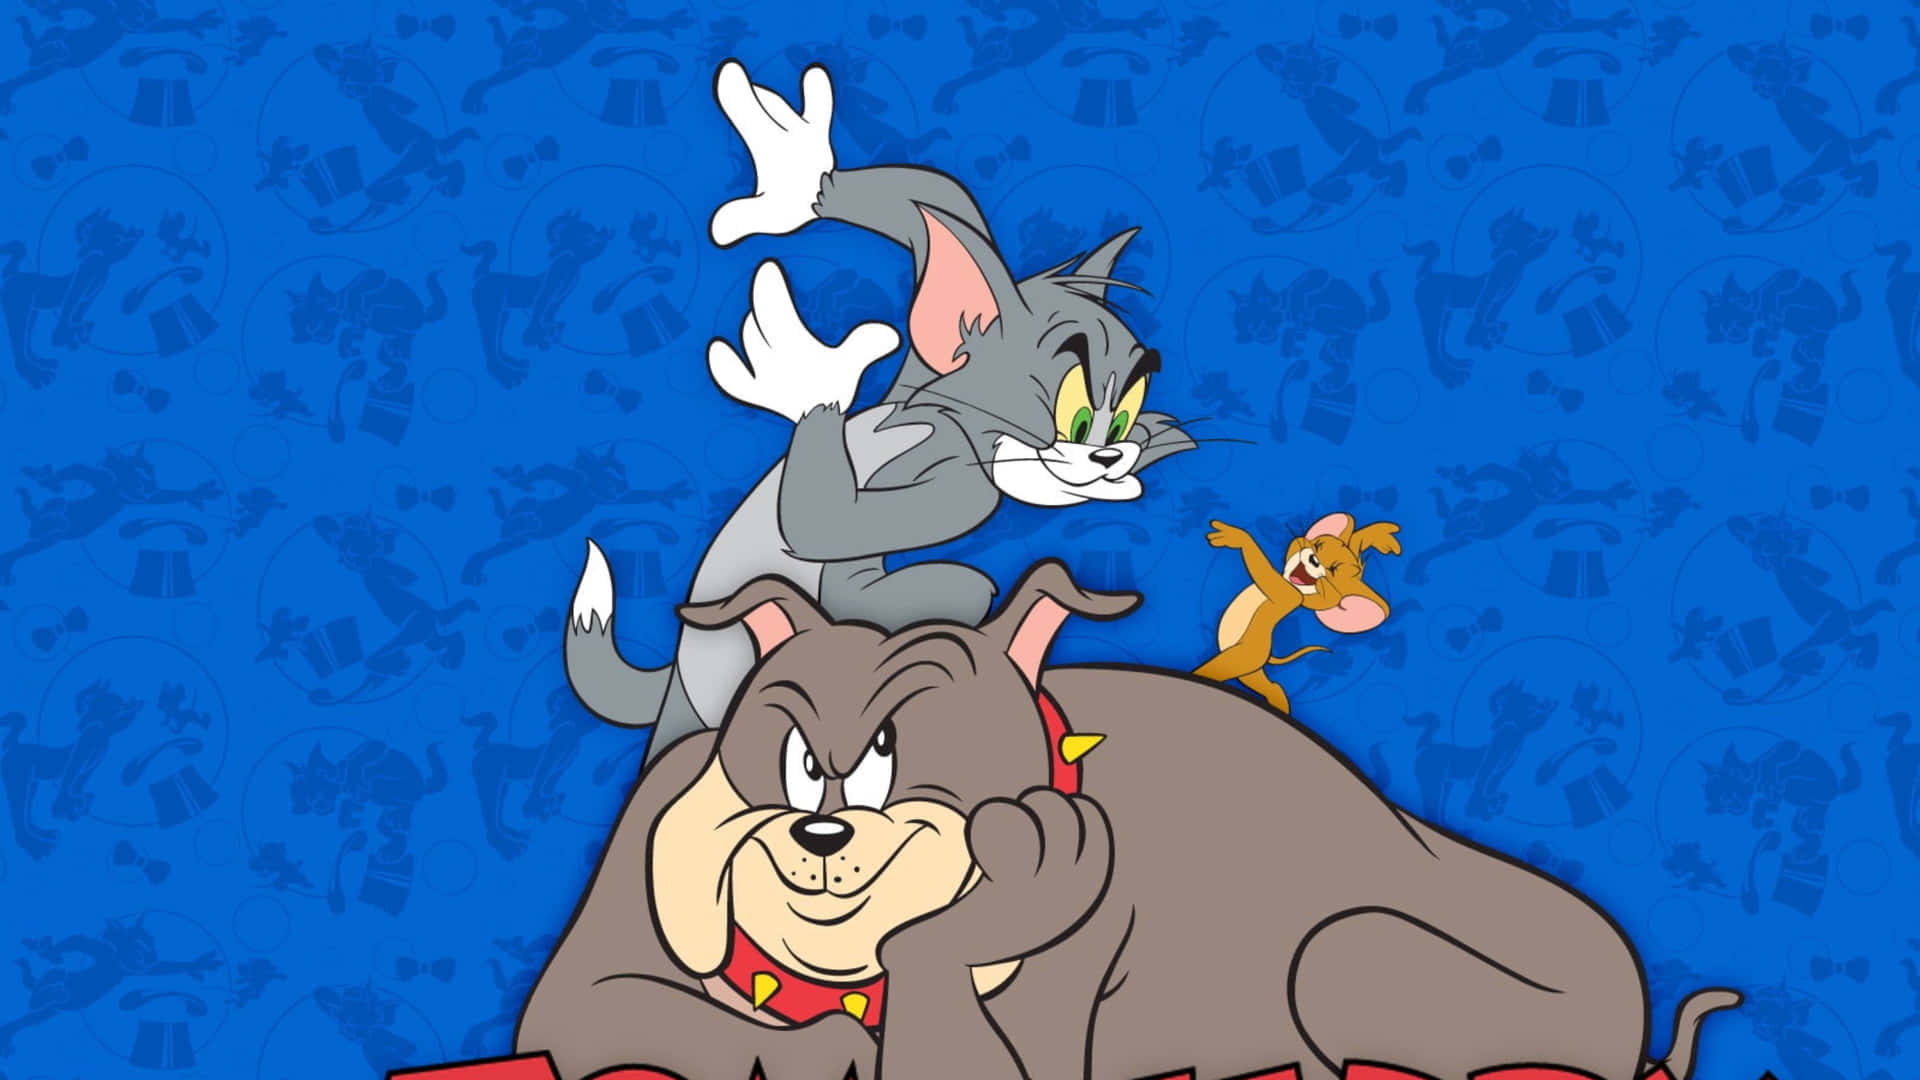 Tomund Jerry In Ihrer Gewohnten Albernen Art In Dieser Lustigen Szene. Wallpaper